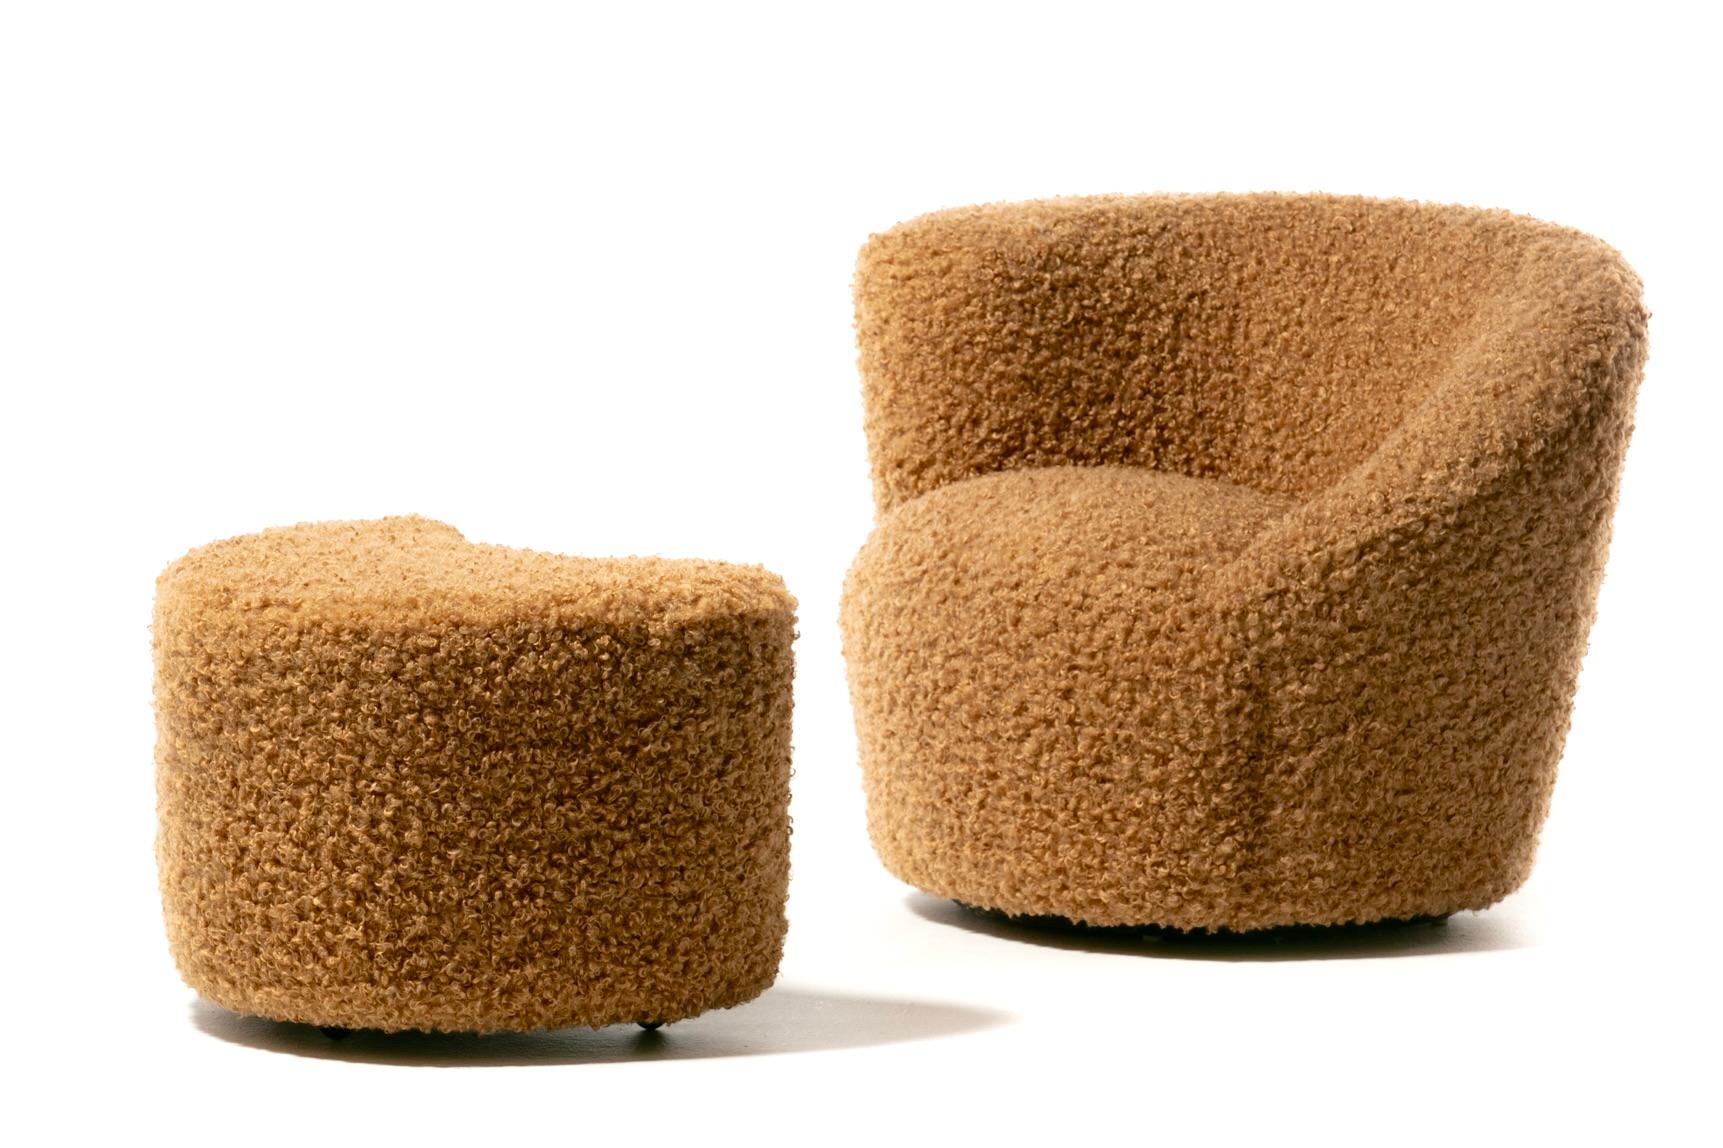 Ces fauteuils pivotants classiques Nautilus de Vladimir Kagan sont sculpturaux, confortables et amusants. Ils ont été récemment retapissés par des professionnels dans un camel bouclé très doux. Moderne avec une texture chaleureuse et accueillante.